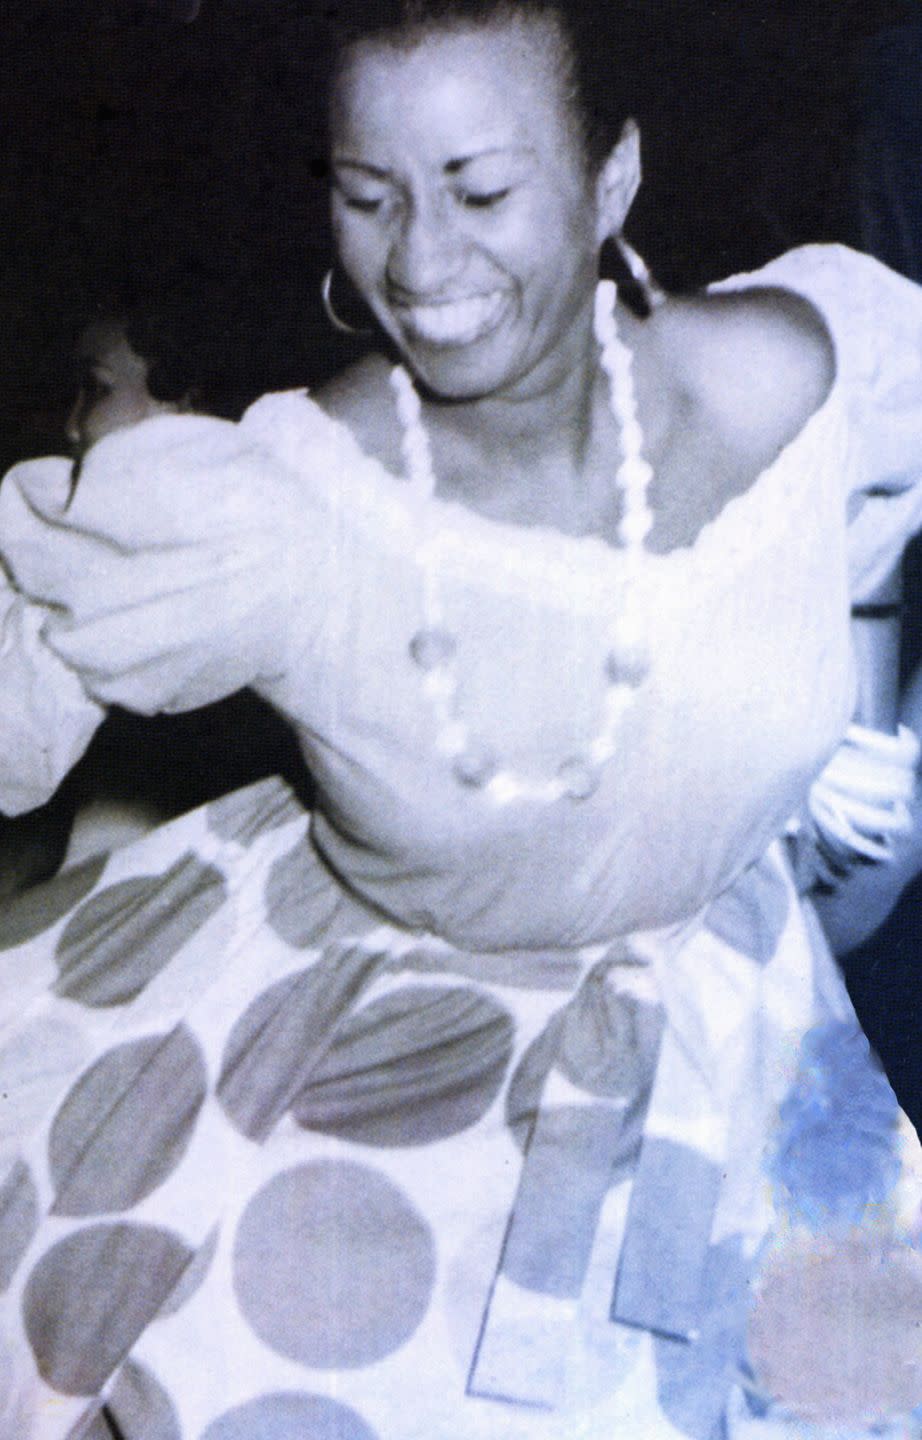 1989: Winning her first Grammy